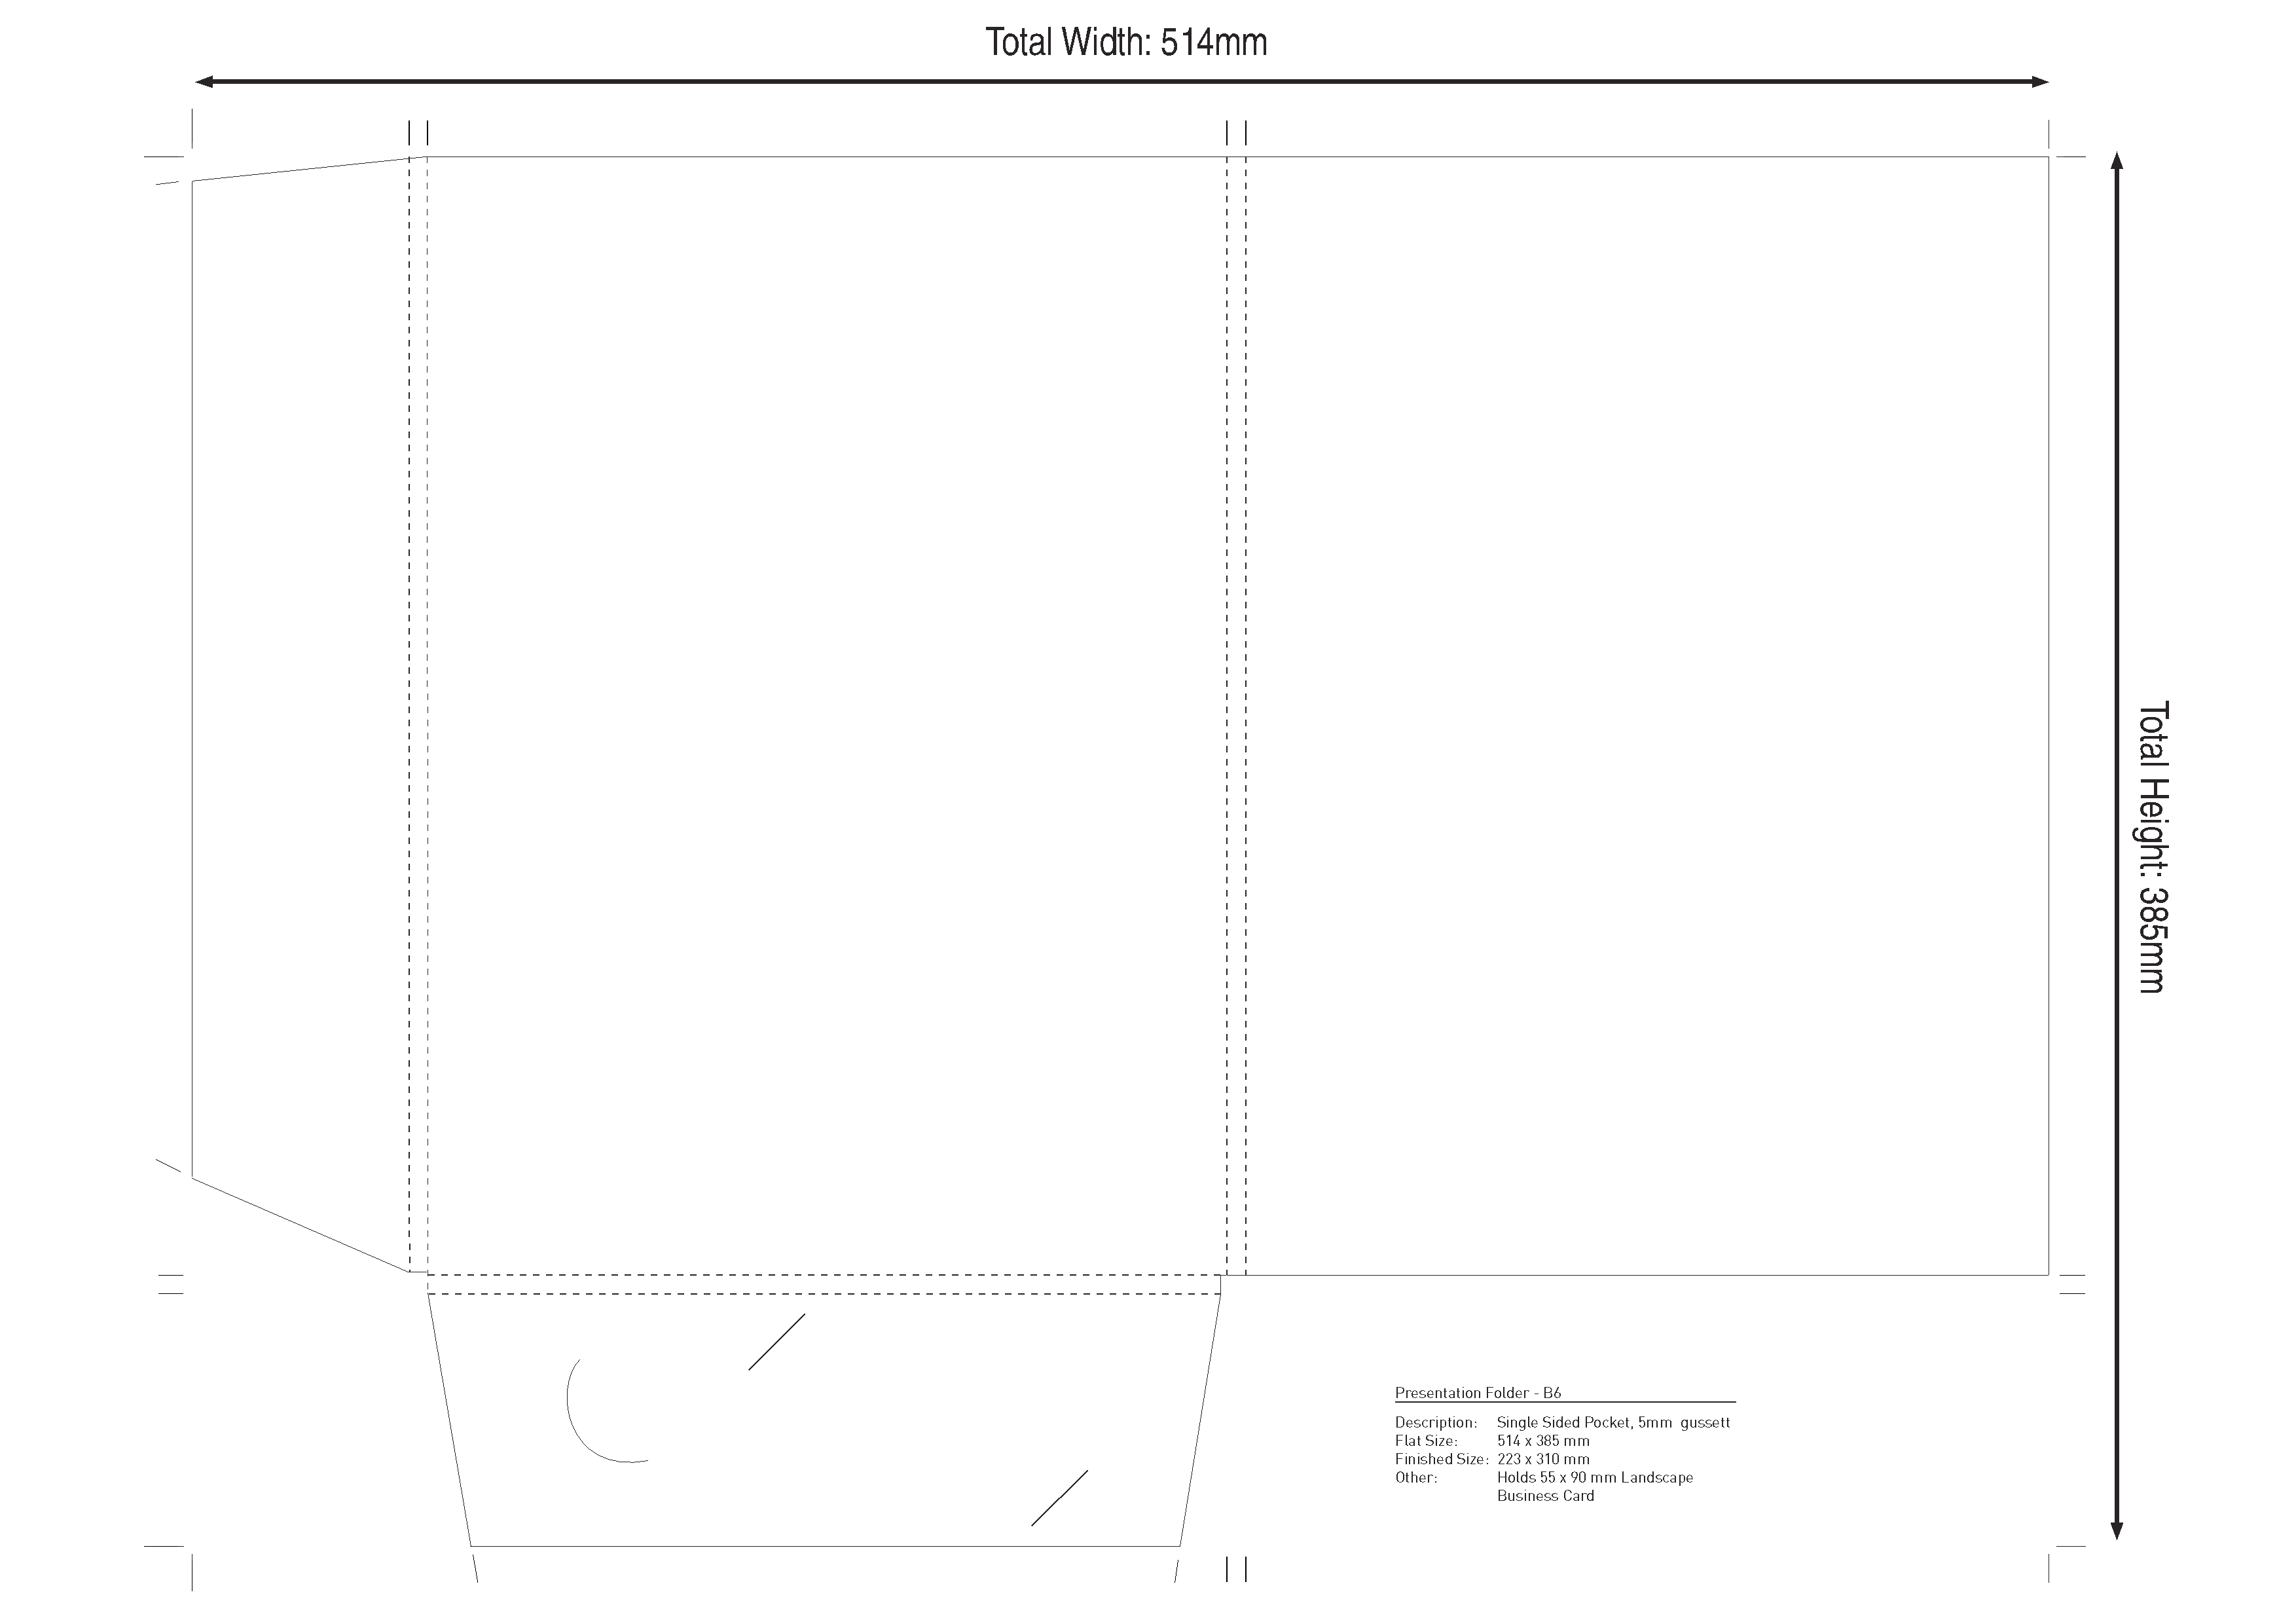 Presentation Folder: 5mm gusset landscape business card